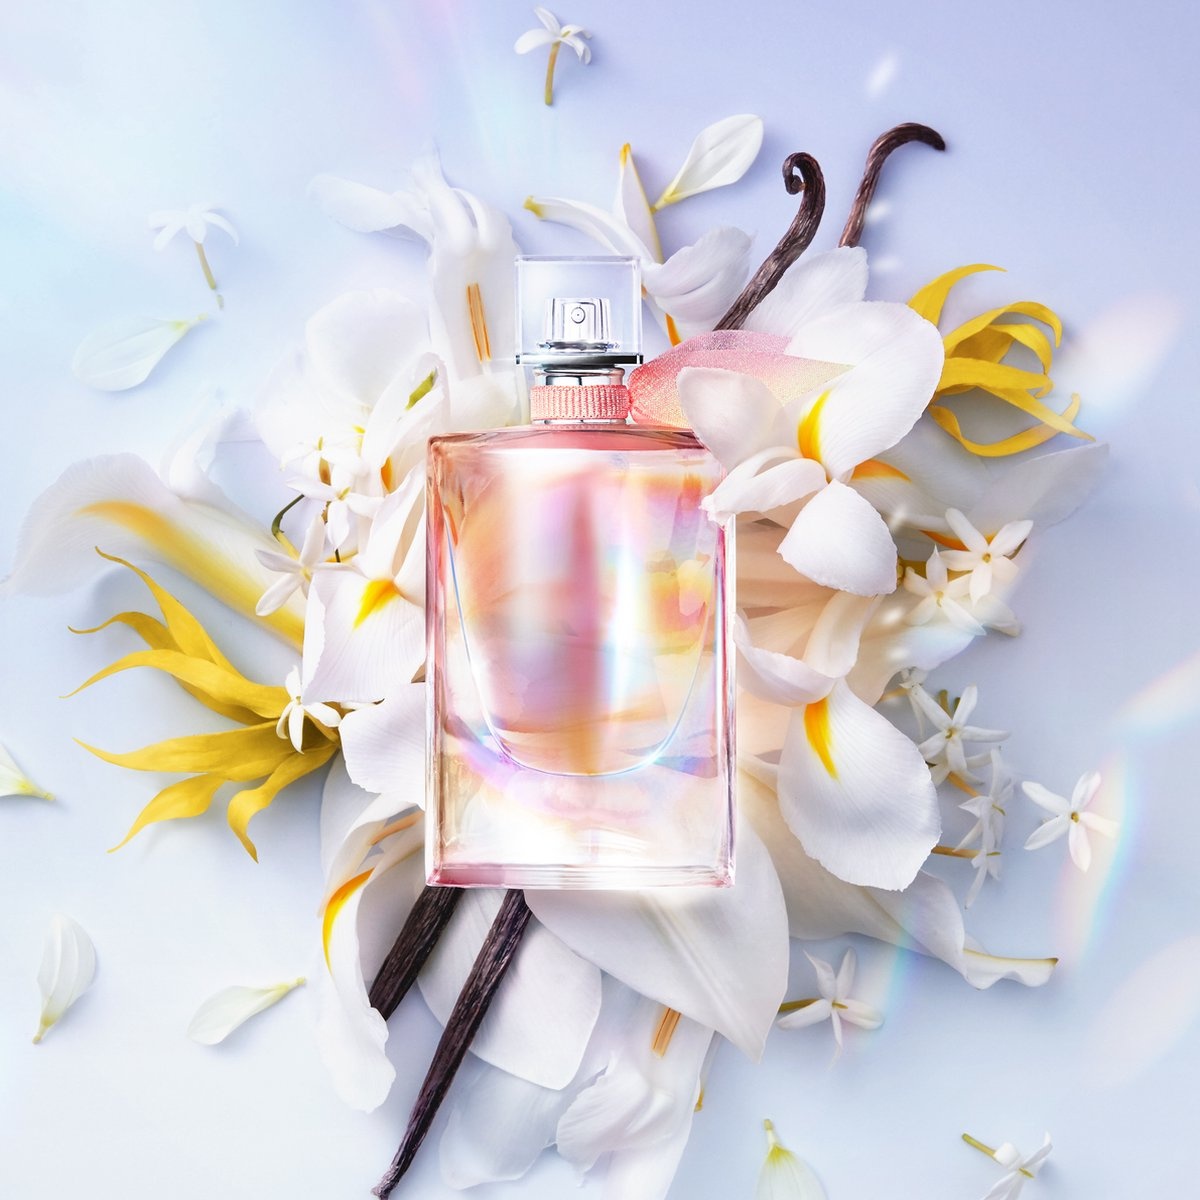 Lancôme - La Vie Est Belle Soleil Crista Eau de Parfum 50ml